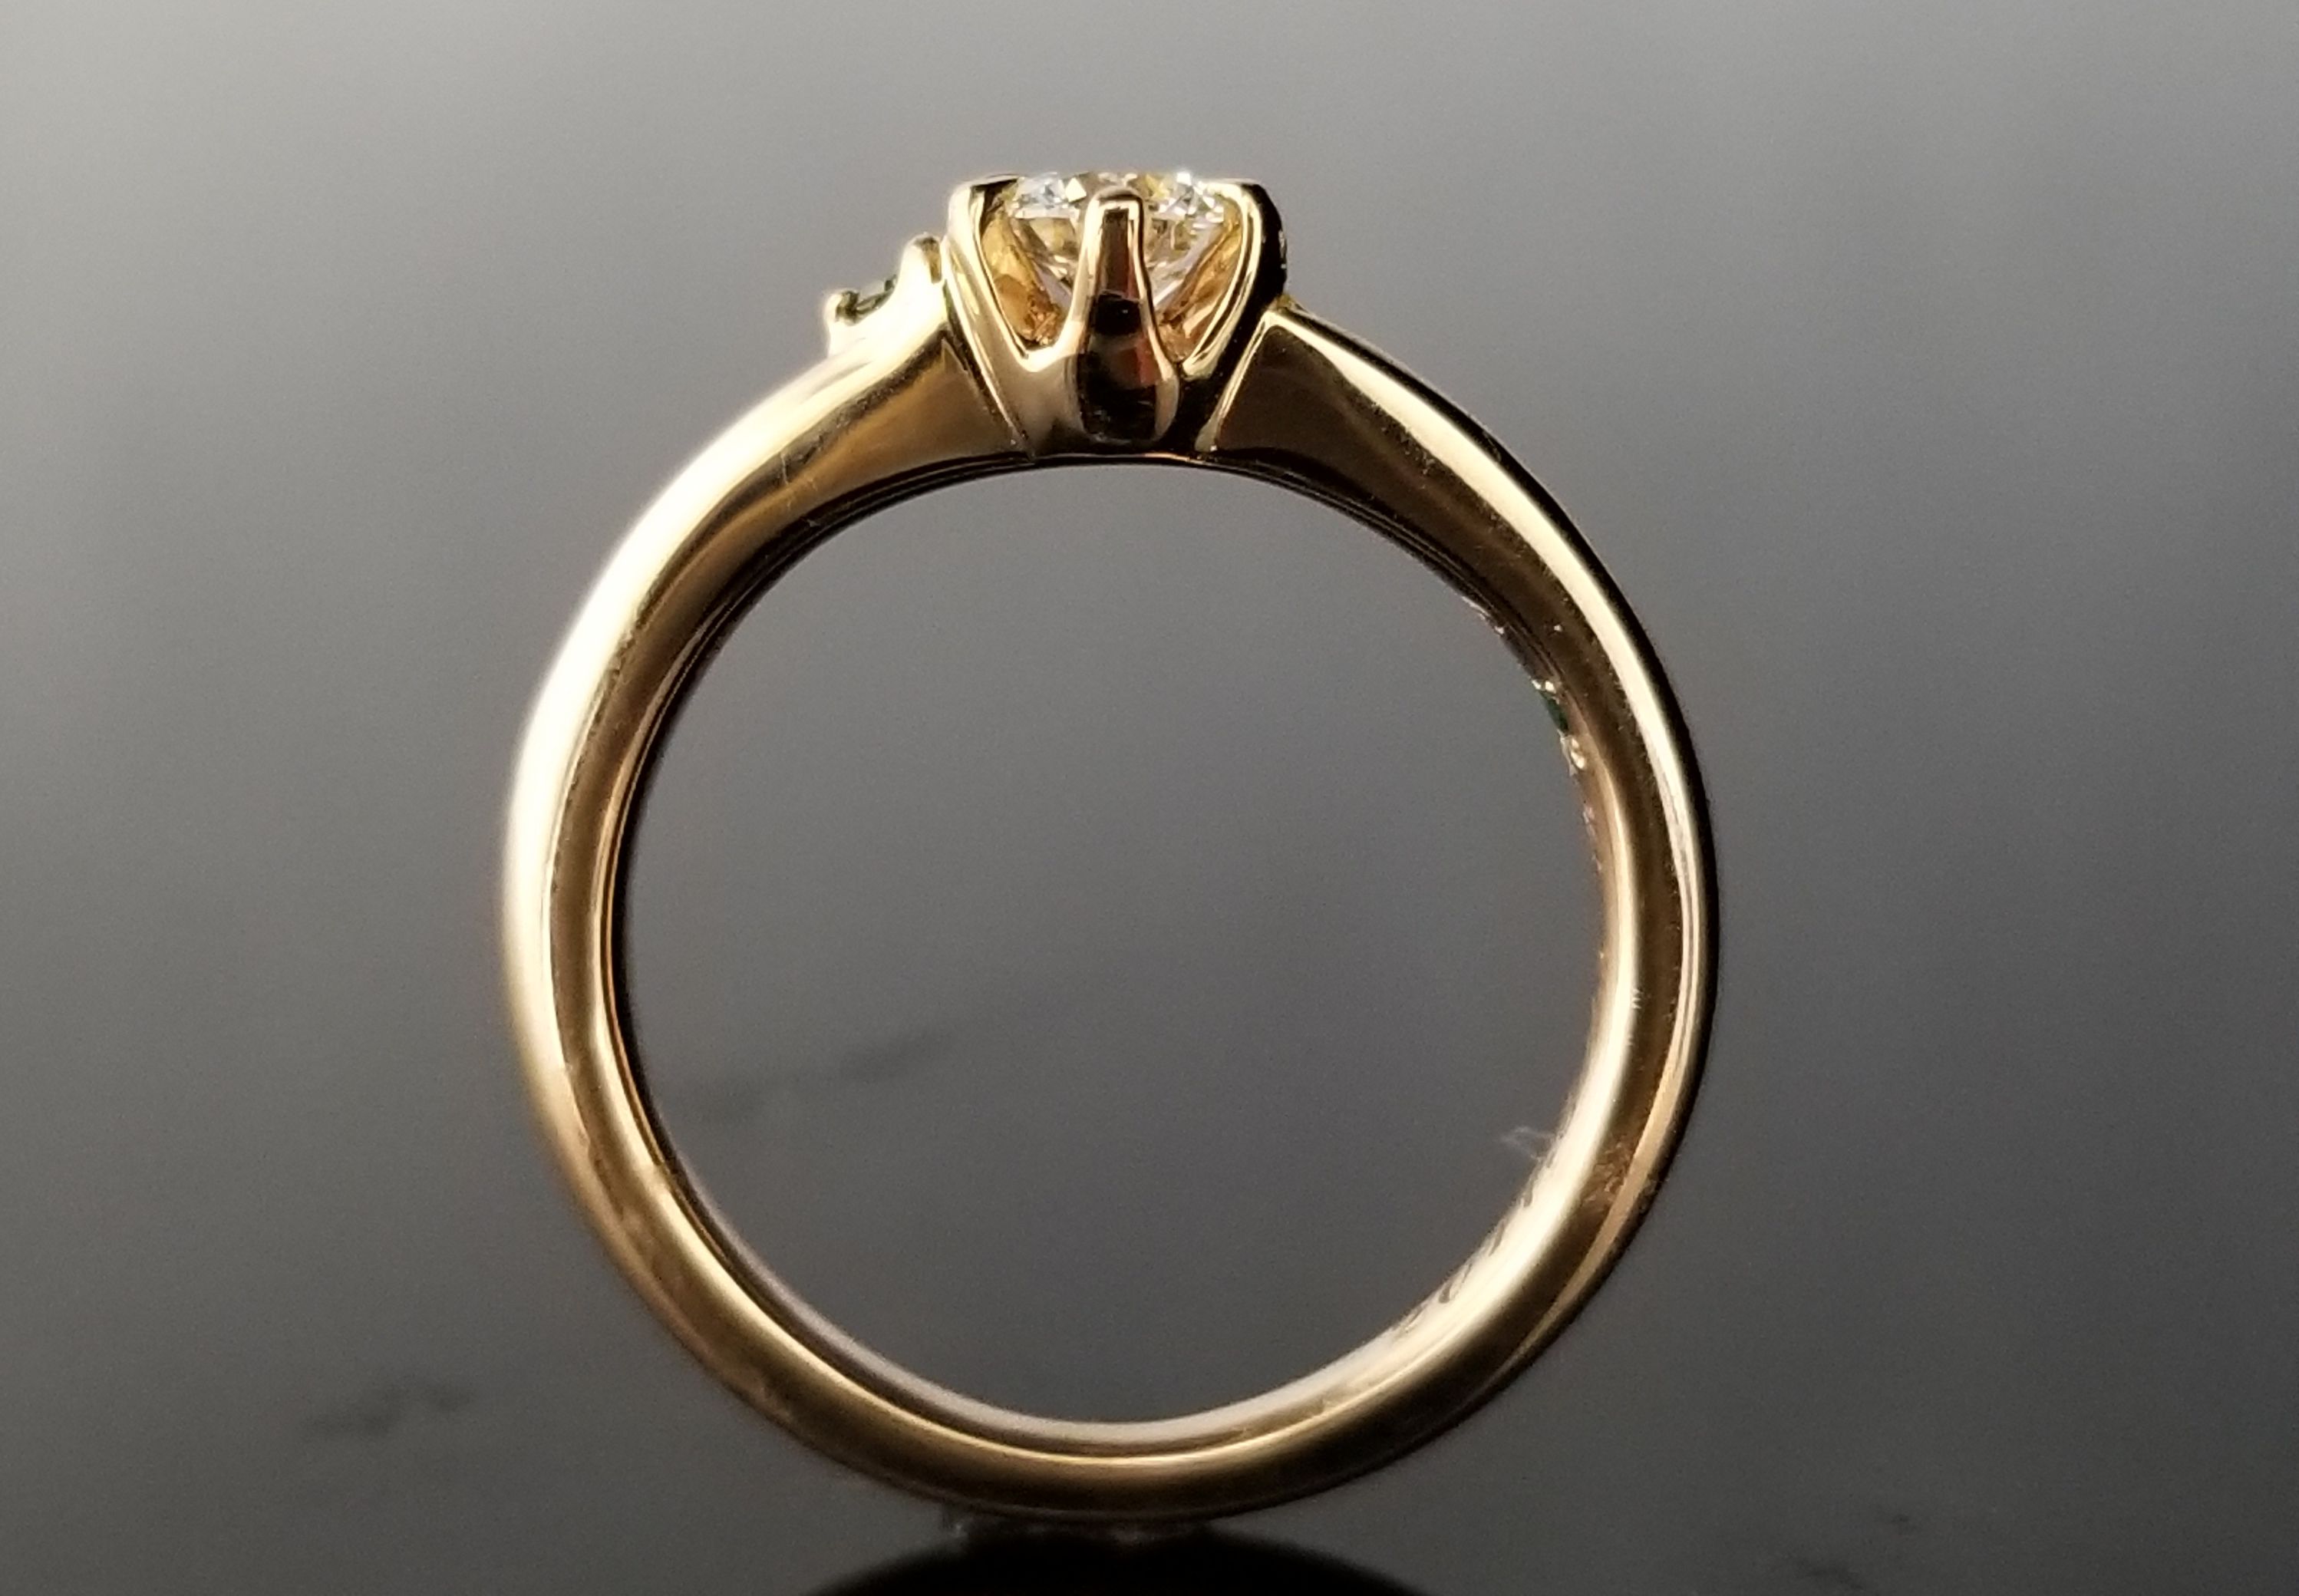 ウェーブ感とダイヤが美しく素敵なフルオーダーのご婚約指輪